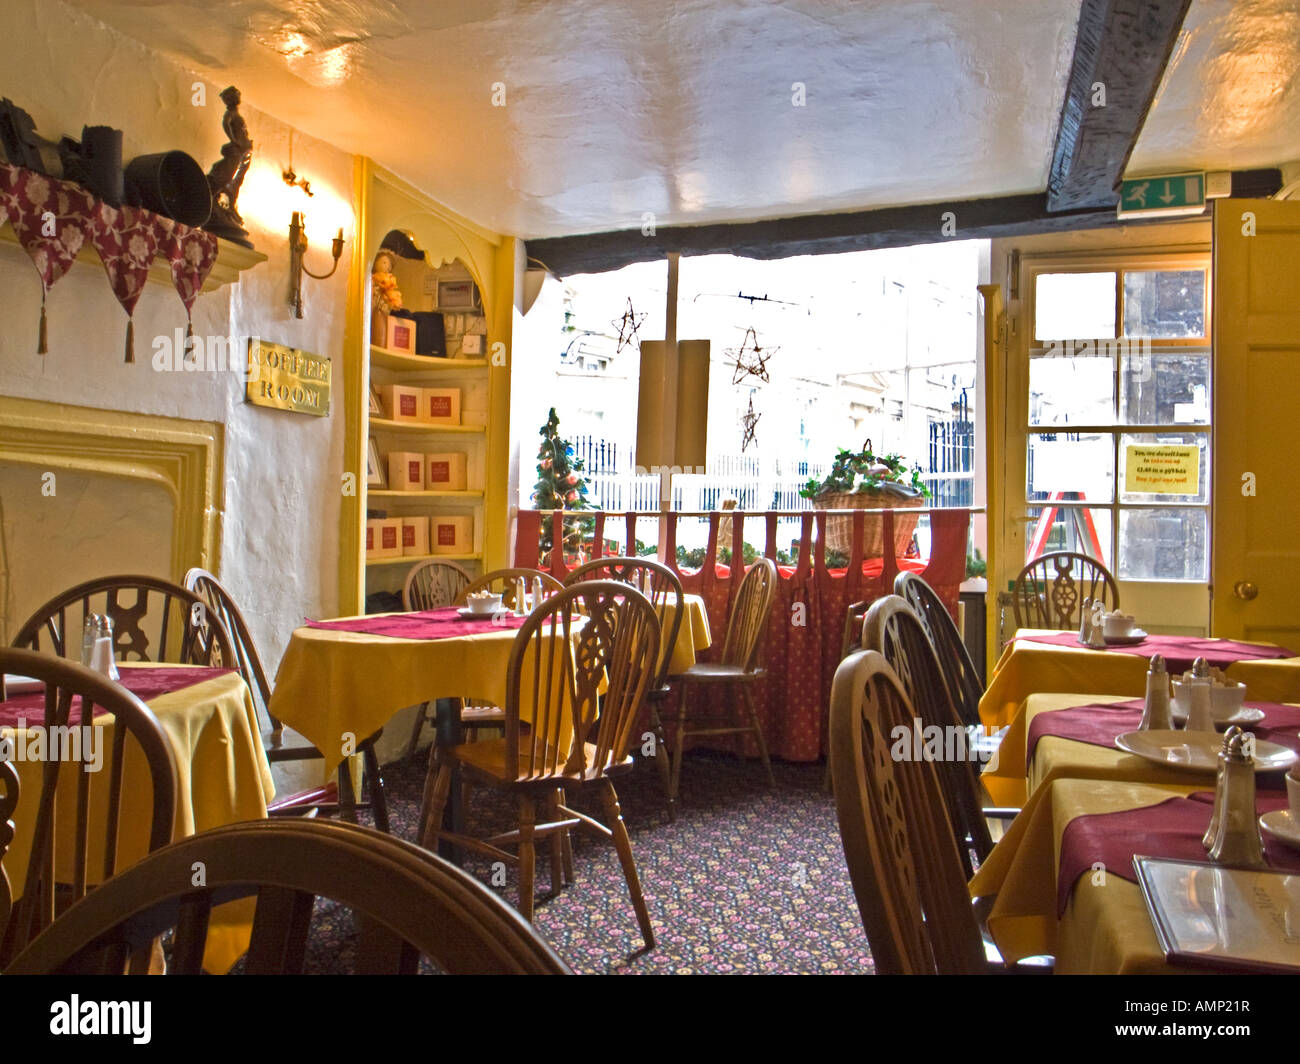 Innere des Sally Lunn Teestuben in Bad Stadt Somerset England UK EU berühmt für seine flachen süßen leichten Süßwaren oder Brötchen Stockfoto